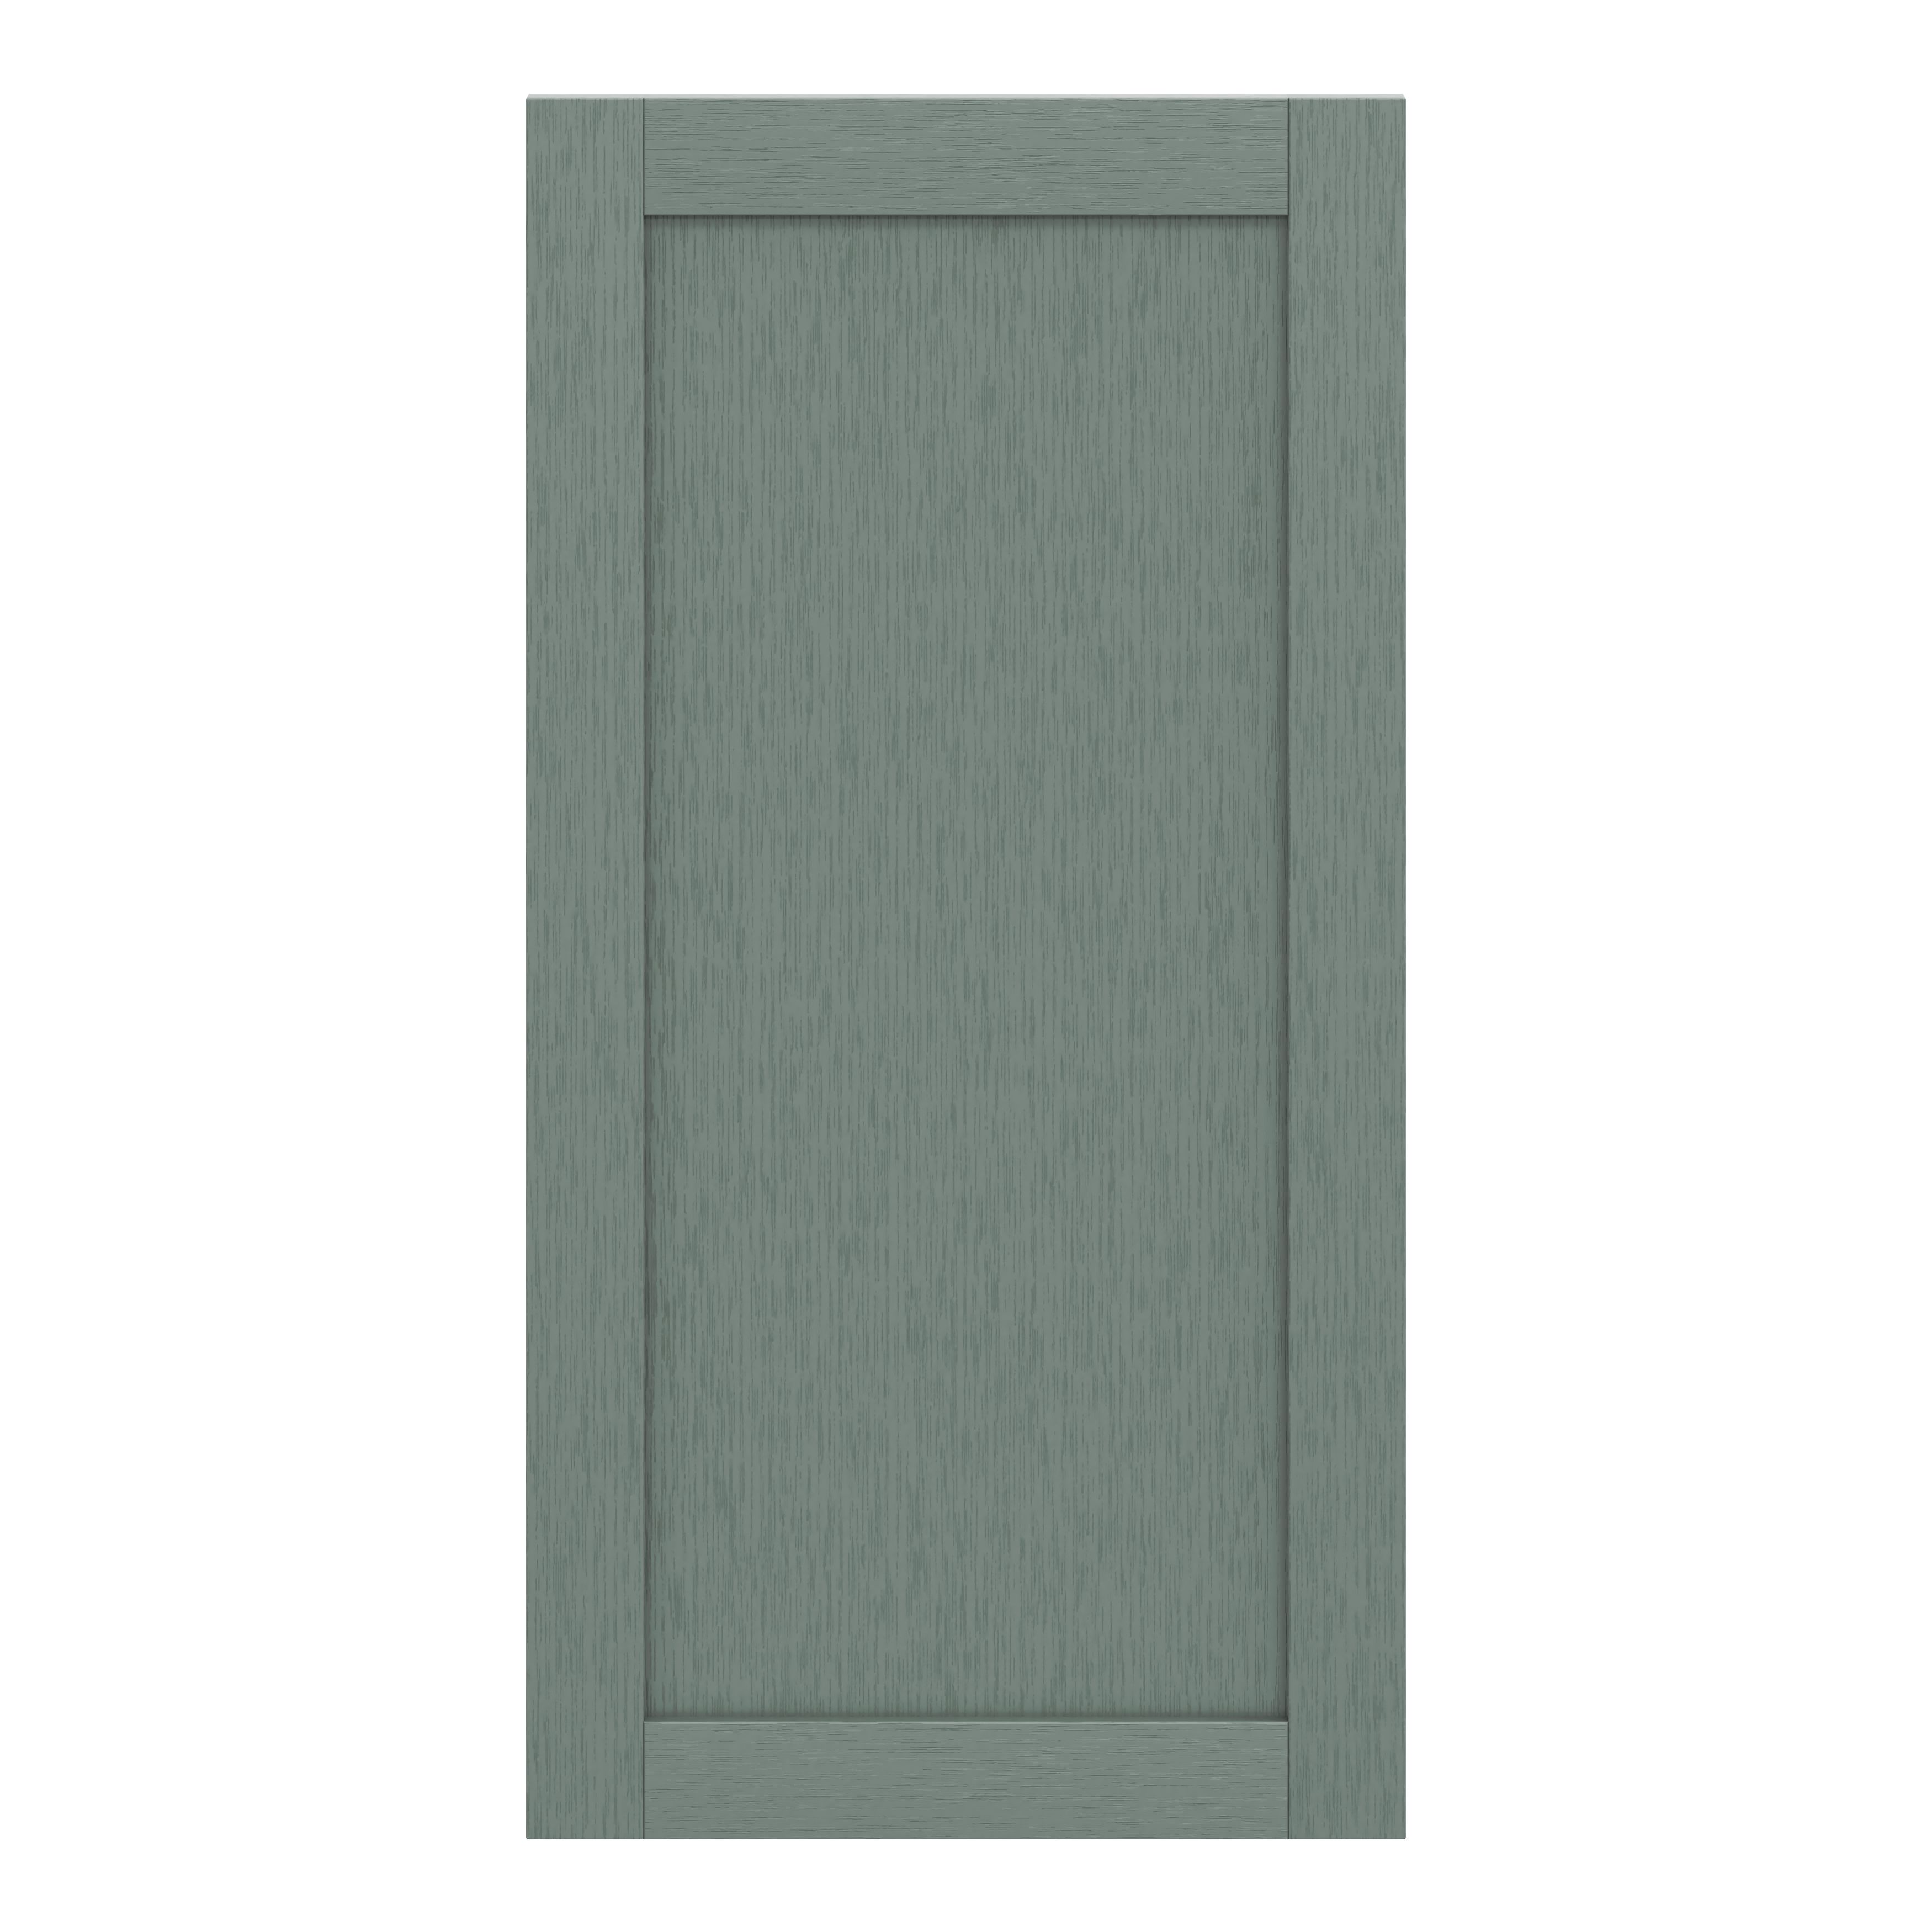 GoodHome Alpinia Matt Green Painted Wood Effect Shaker Tall larder Cabinet door (W)600mm (H)1181mm (T)18mm